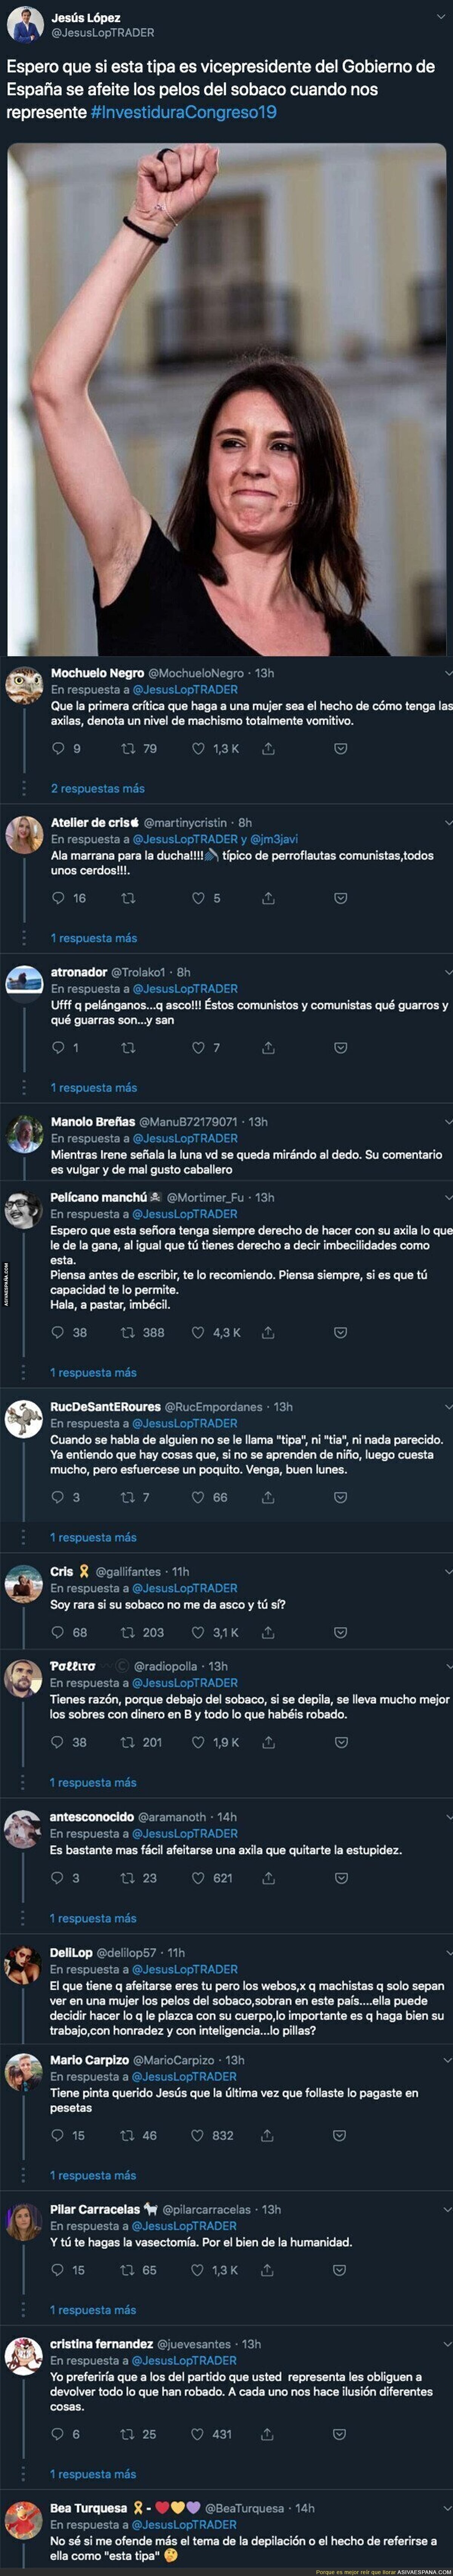 Indignación total por el comentario vomitivo hacia Irene Montero del Portavoz del PP en Barajas de Melo (Cuenca)